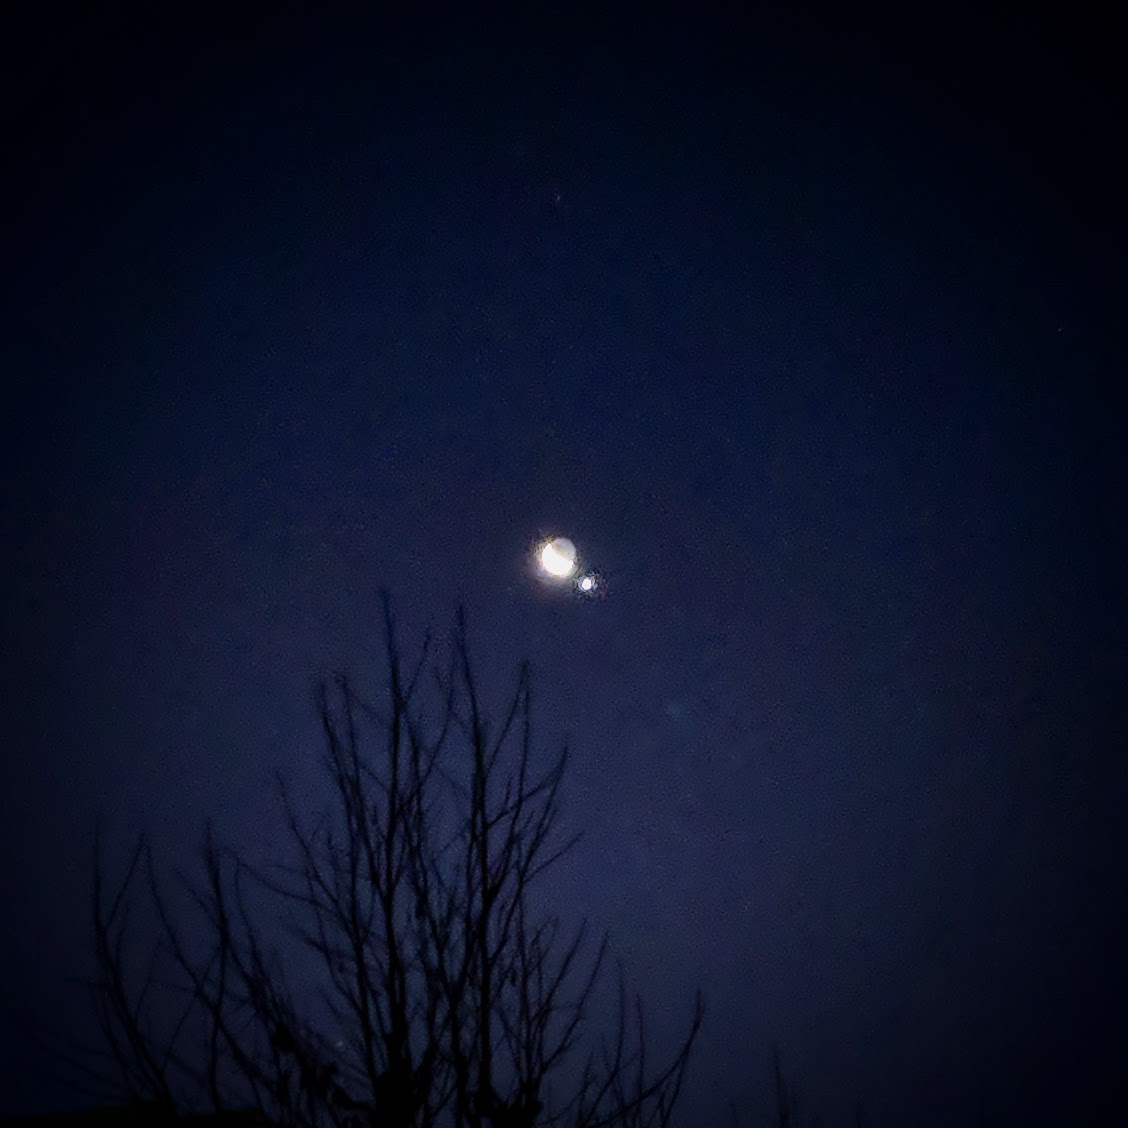 2019年1/2 早朝：月の横に明るい星が！金星らしい